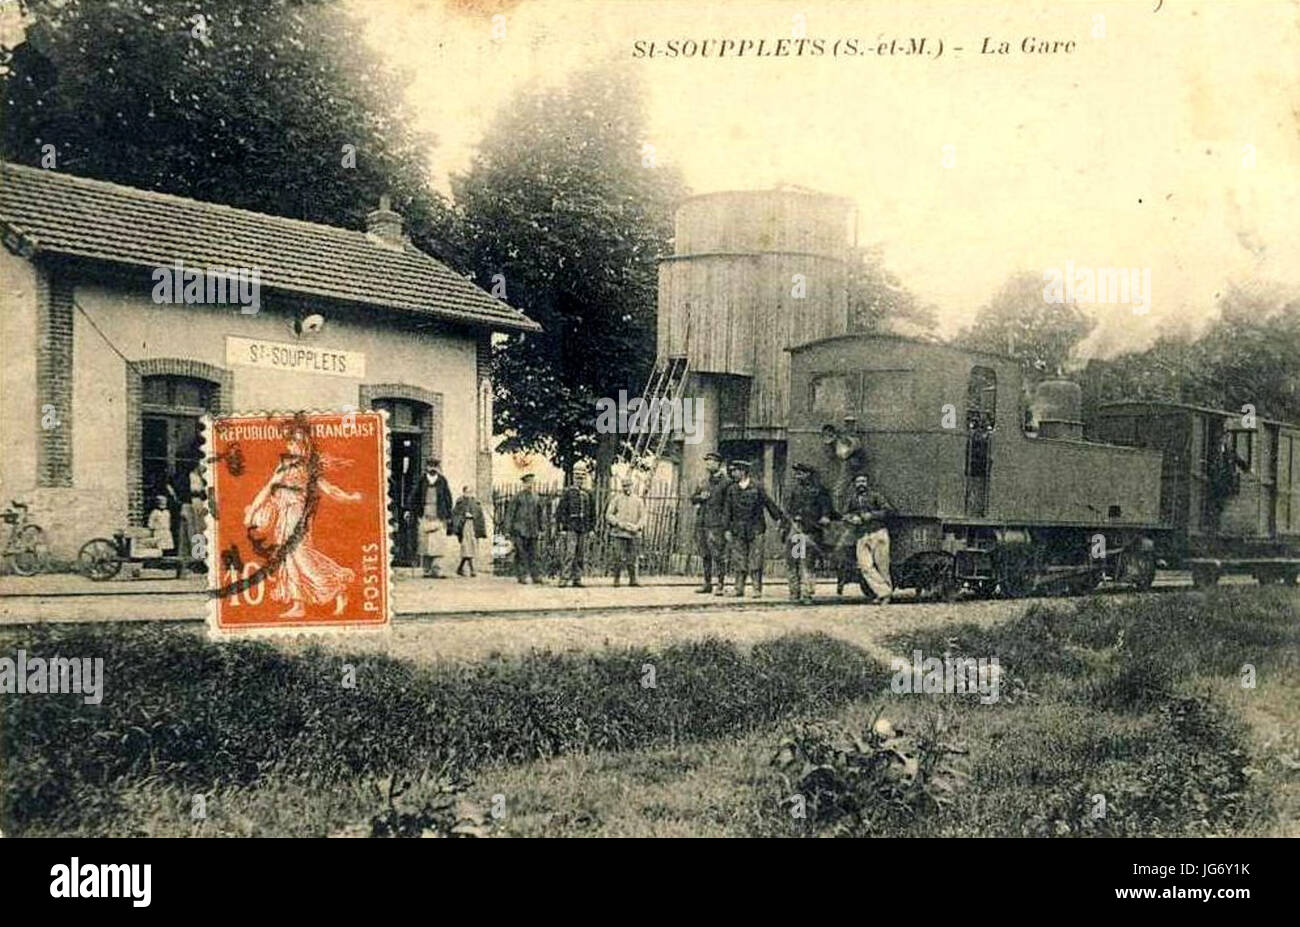 Saint-Soupplets (77), la gare du tramway de Meaux à Dammartin Photo Stock -  Alamy